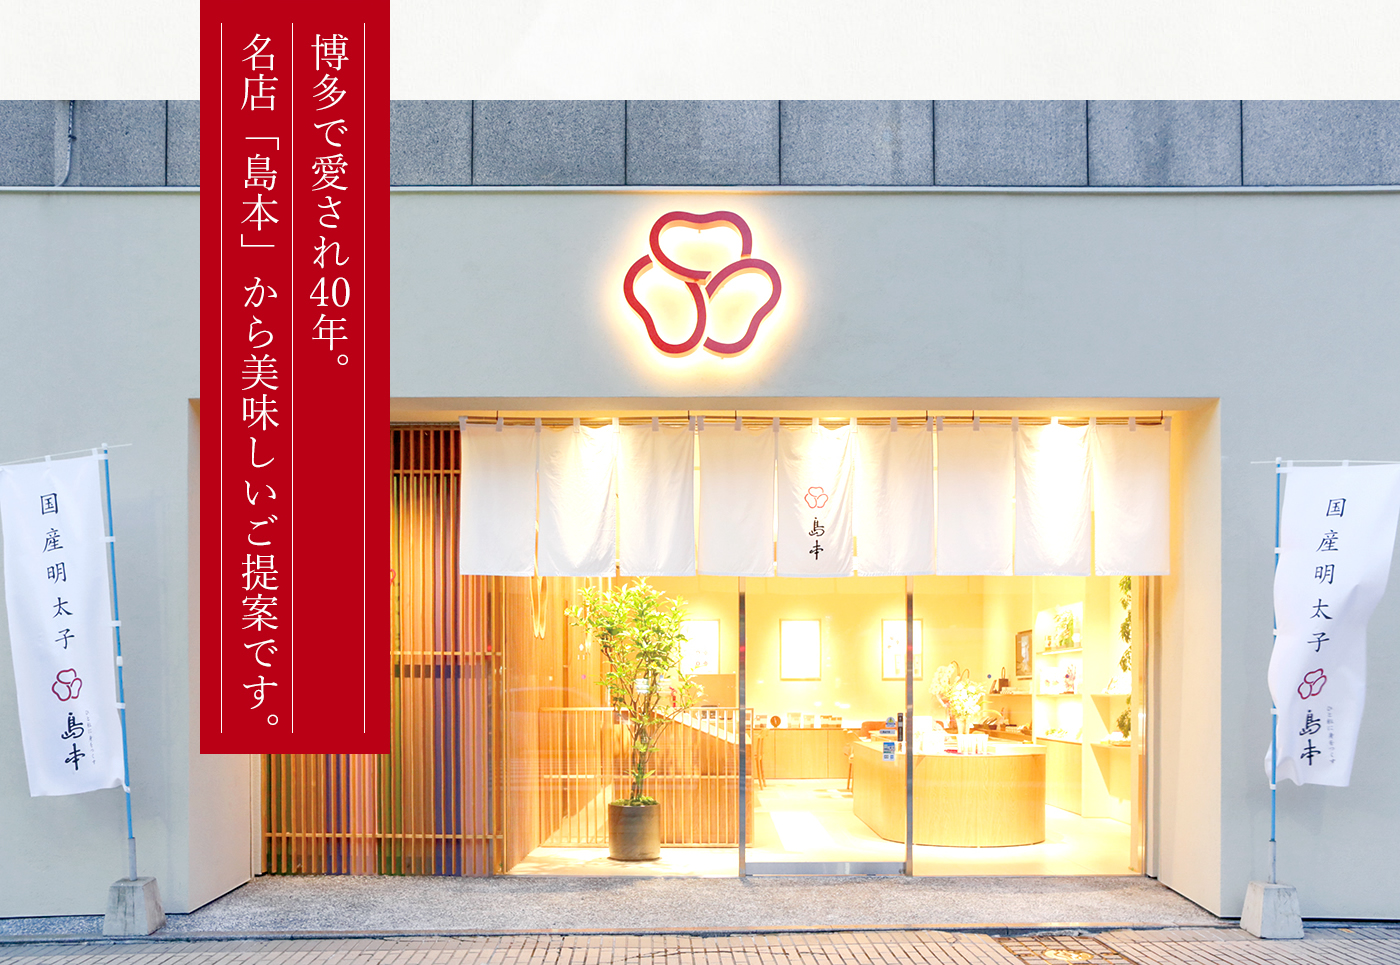 博多で愛され40年。名店「島本」から美味しいご提案です。